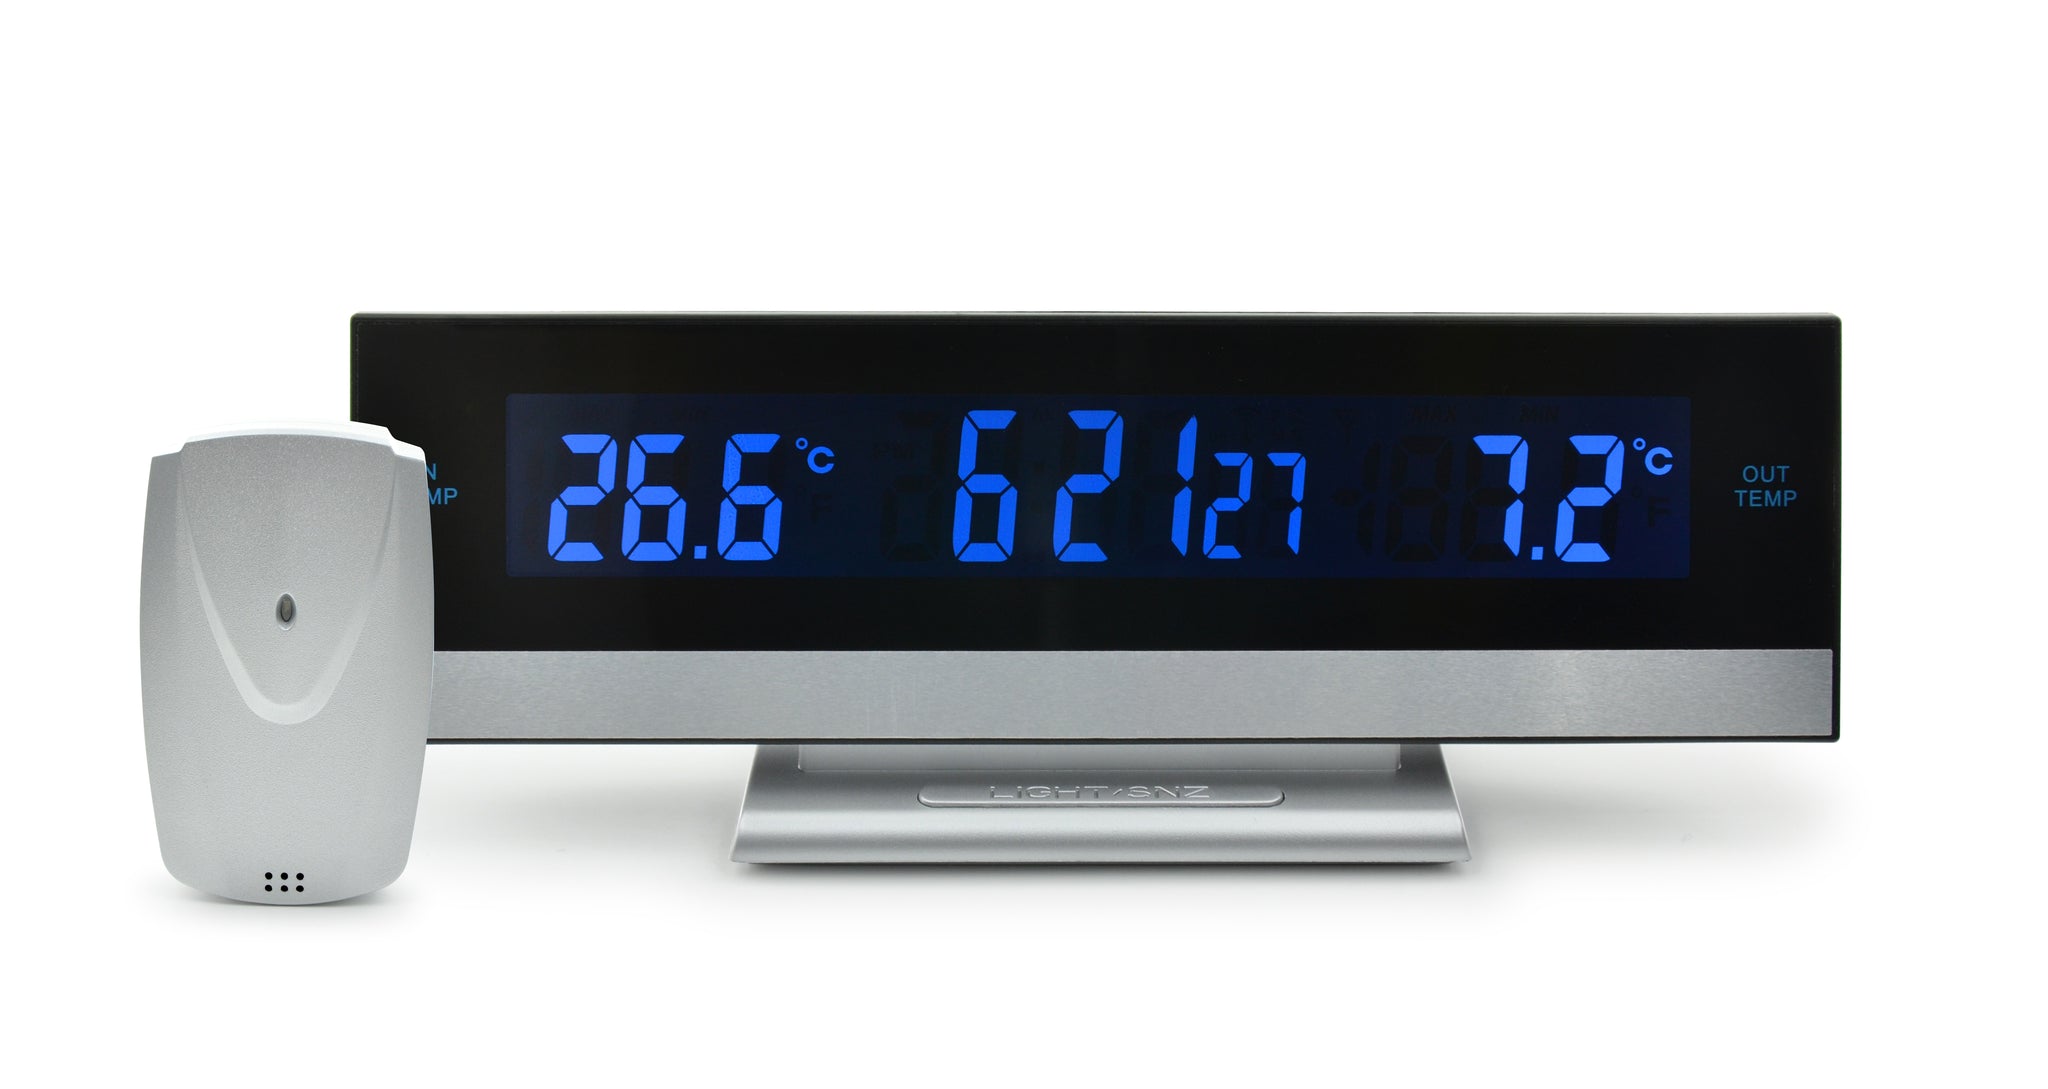 Thermomètre numérique AcuRite intérieur et extérieur avec horloge  00768CASBL